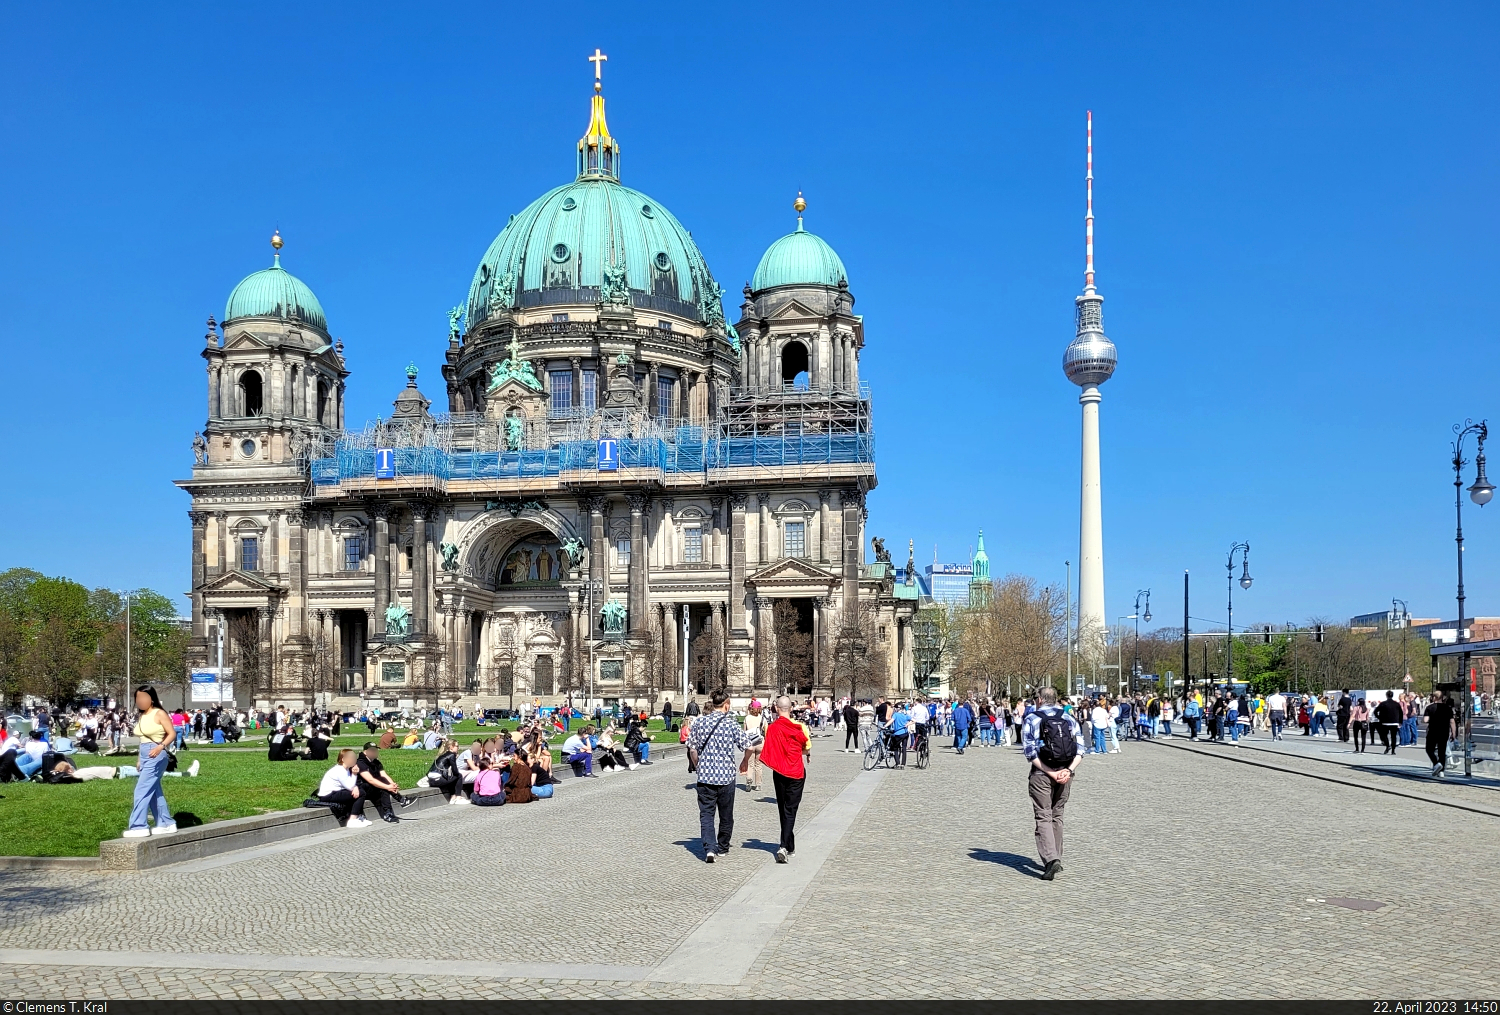 Berliner Dom und Fernsehturm, gesehen am Rande des stark frequentierten Lustgartens.

🕓 22.4.2023 | 14:50 Uhr